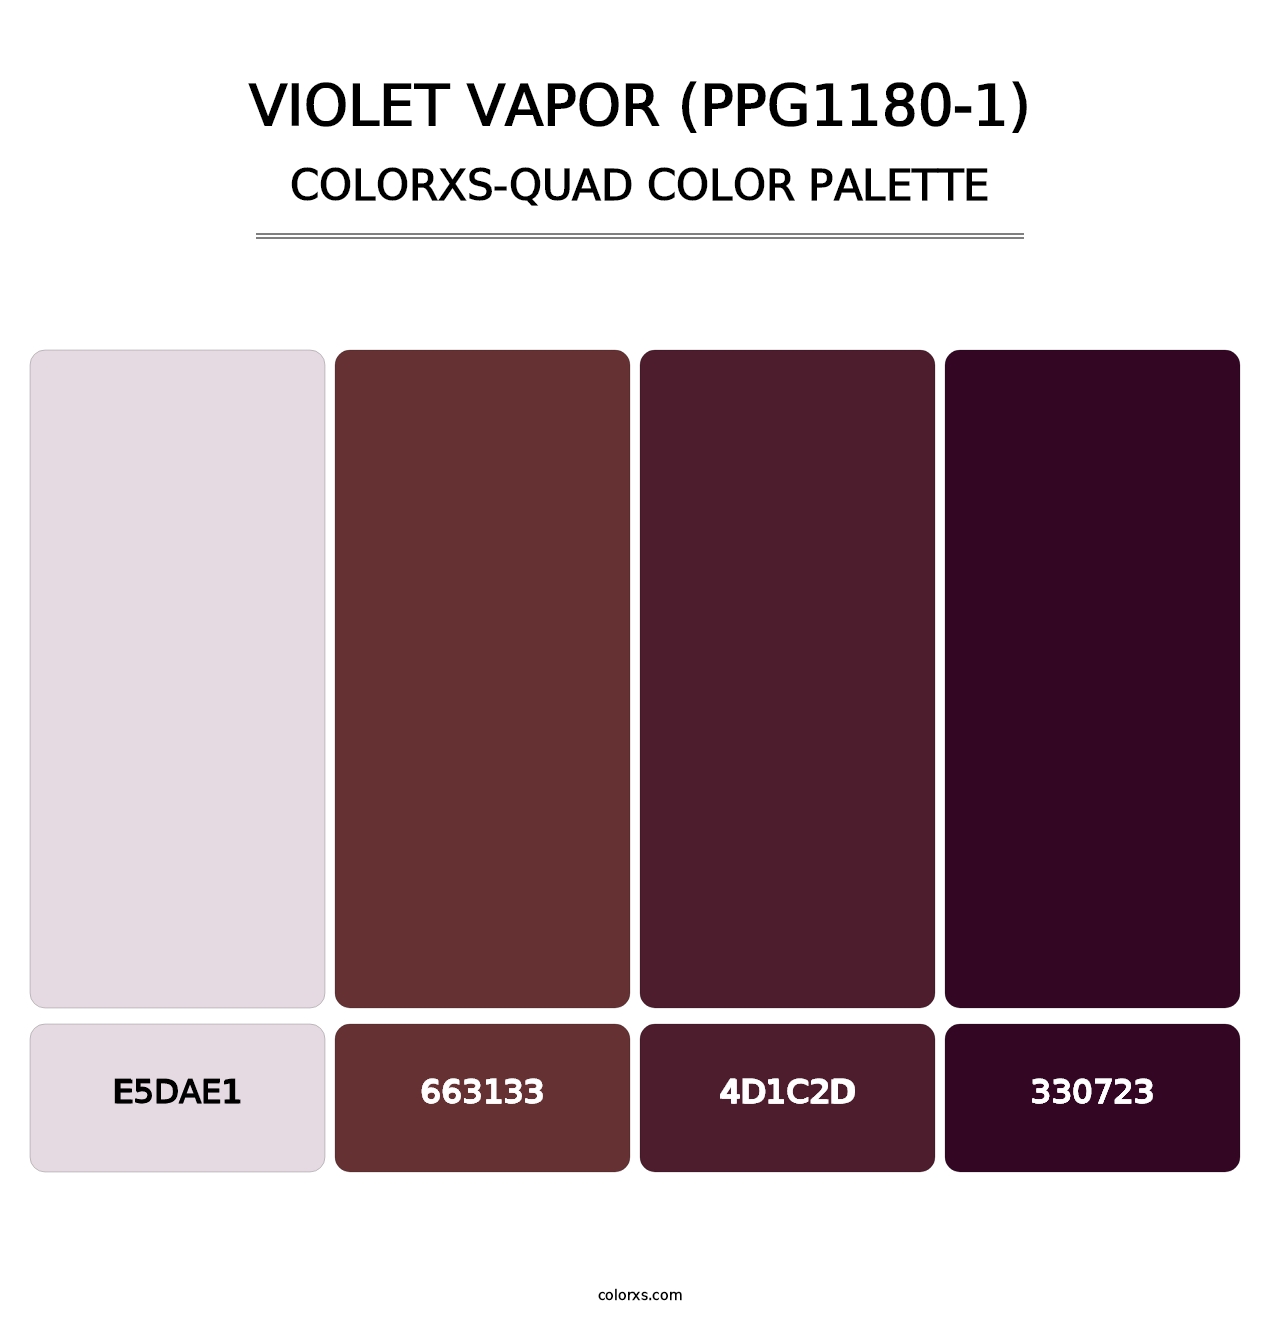 Violet Vapor (PPG1180-1) - Colorxs Quad Palette